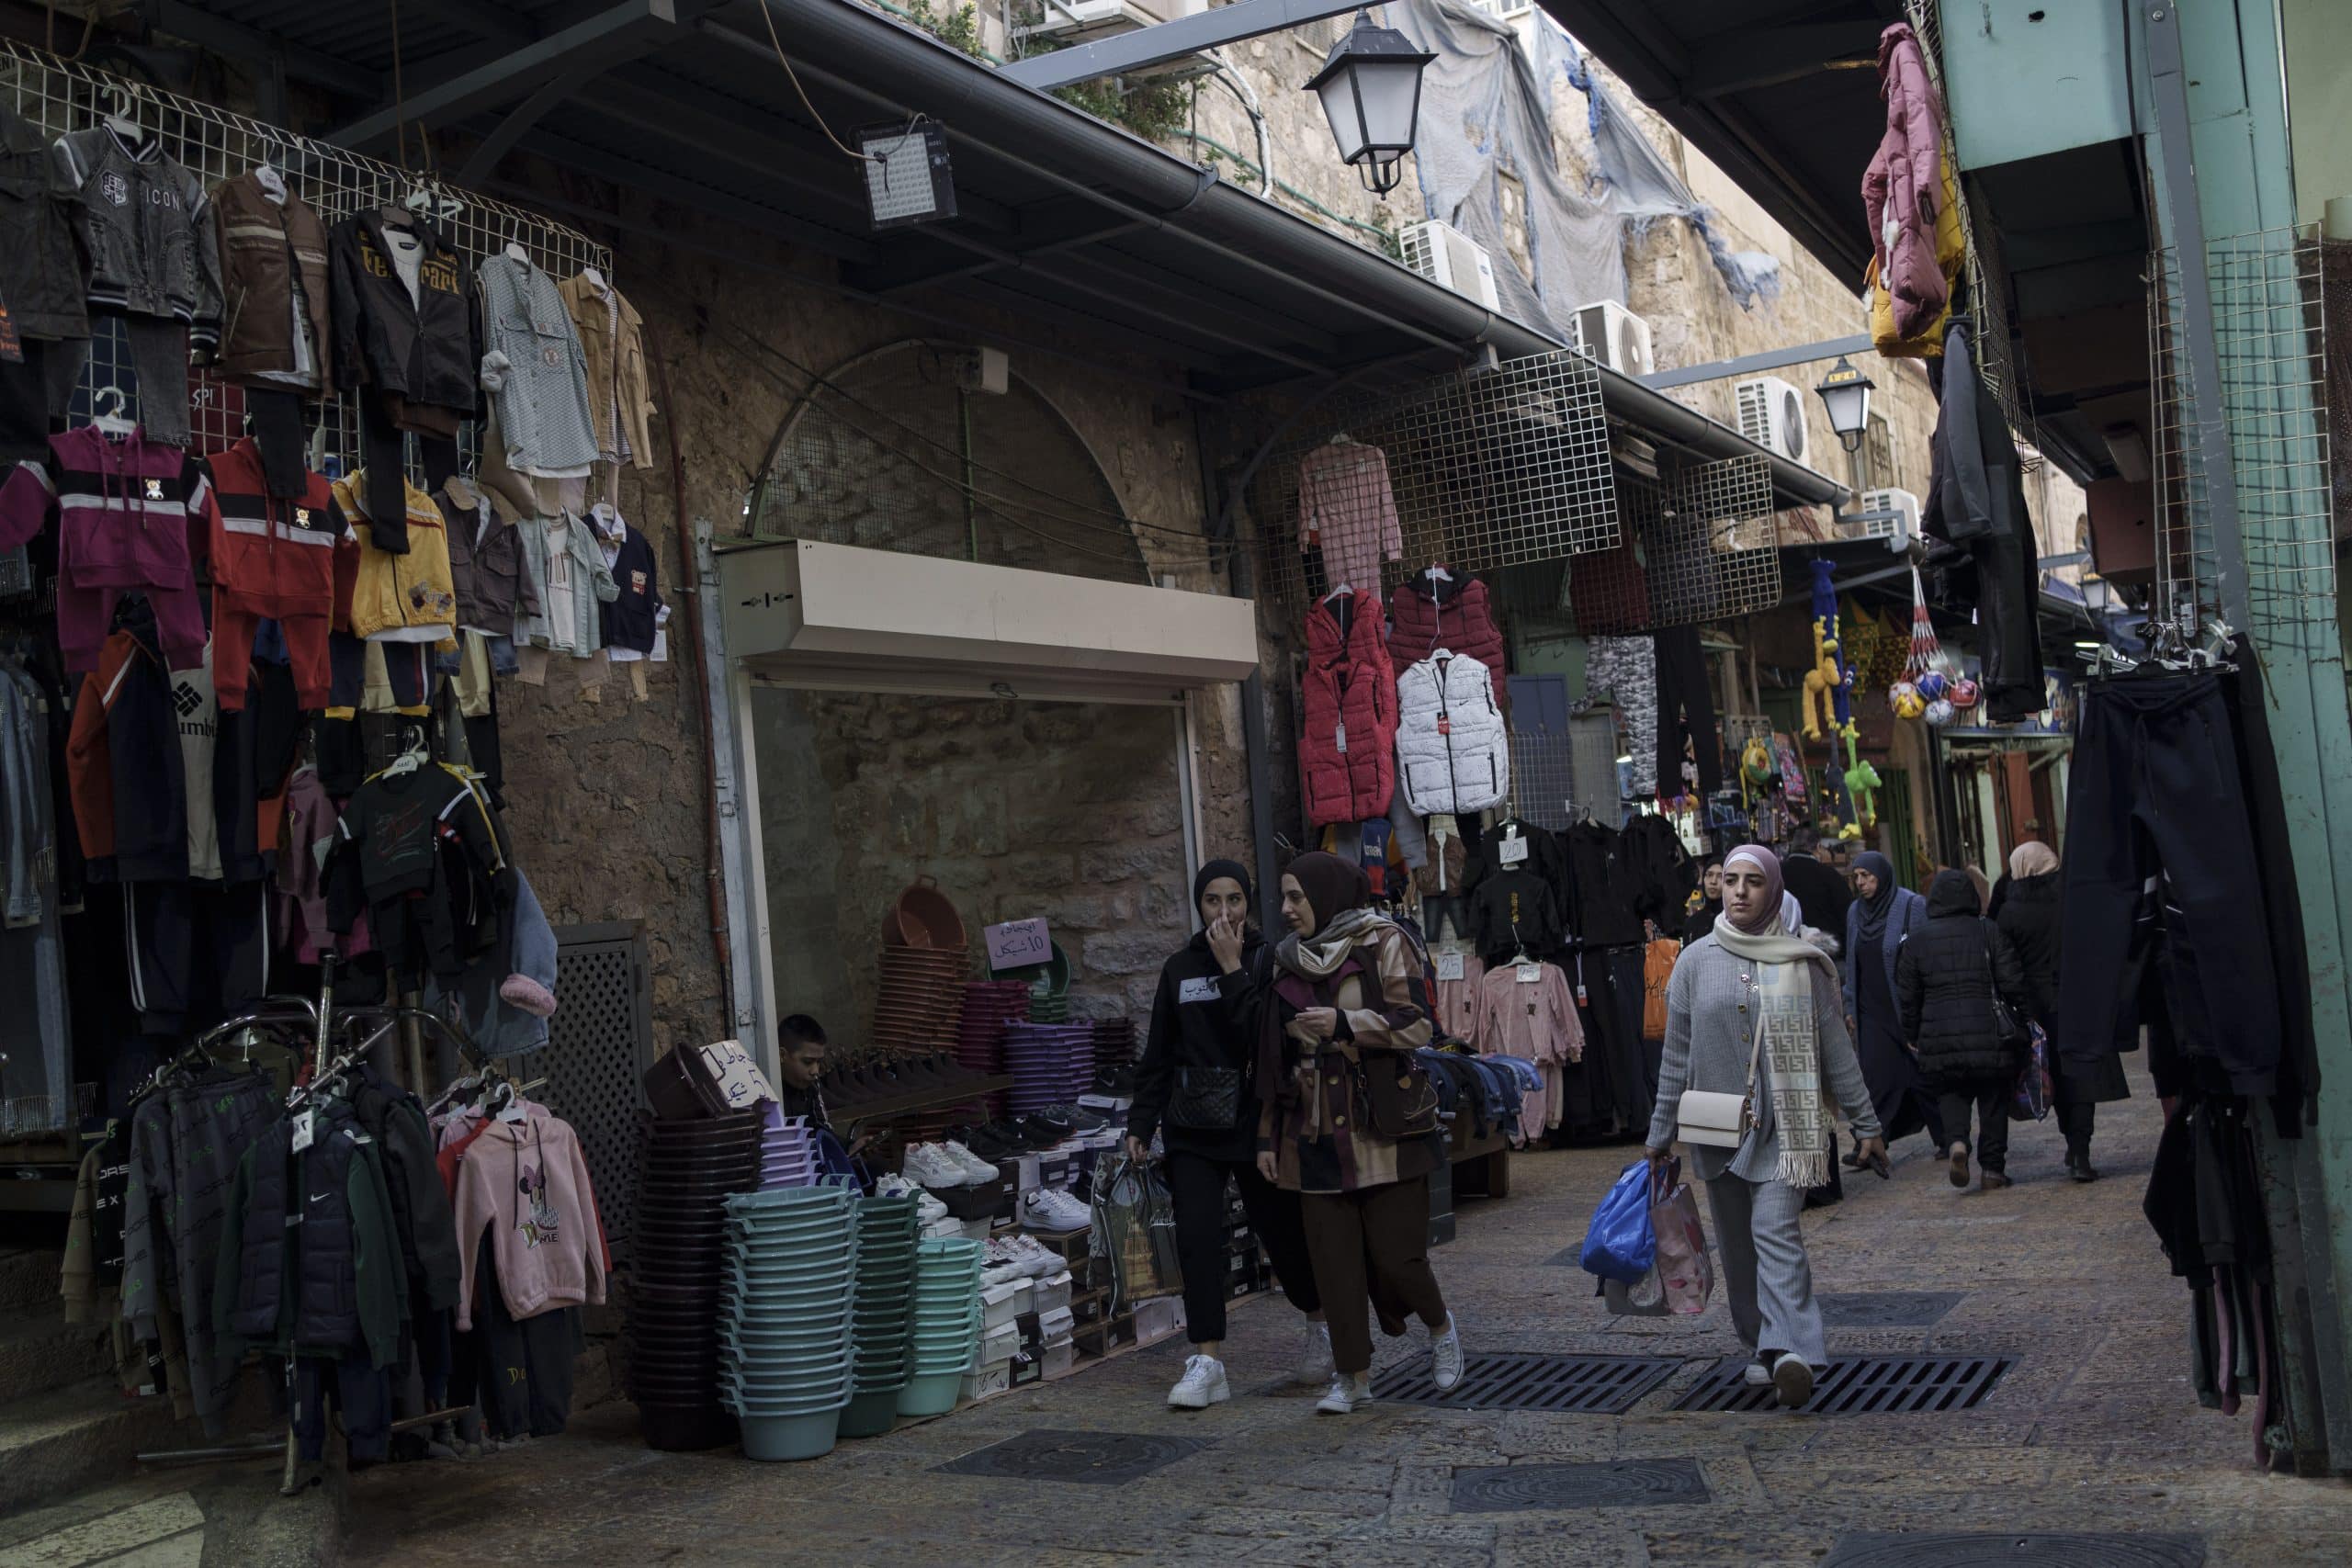 On eve of Ramadan, Jerusalem’s Old City offers little festivity as Gaza